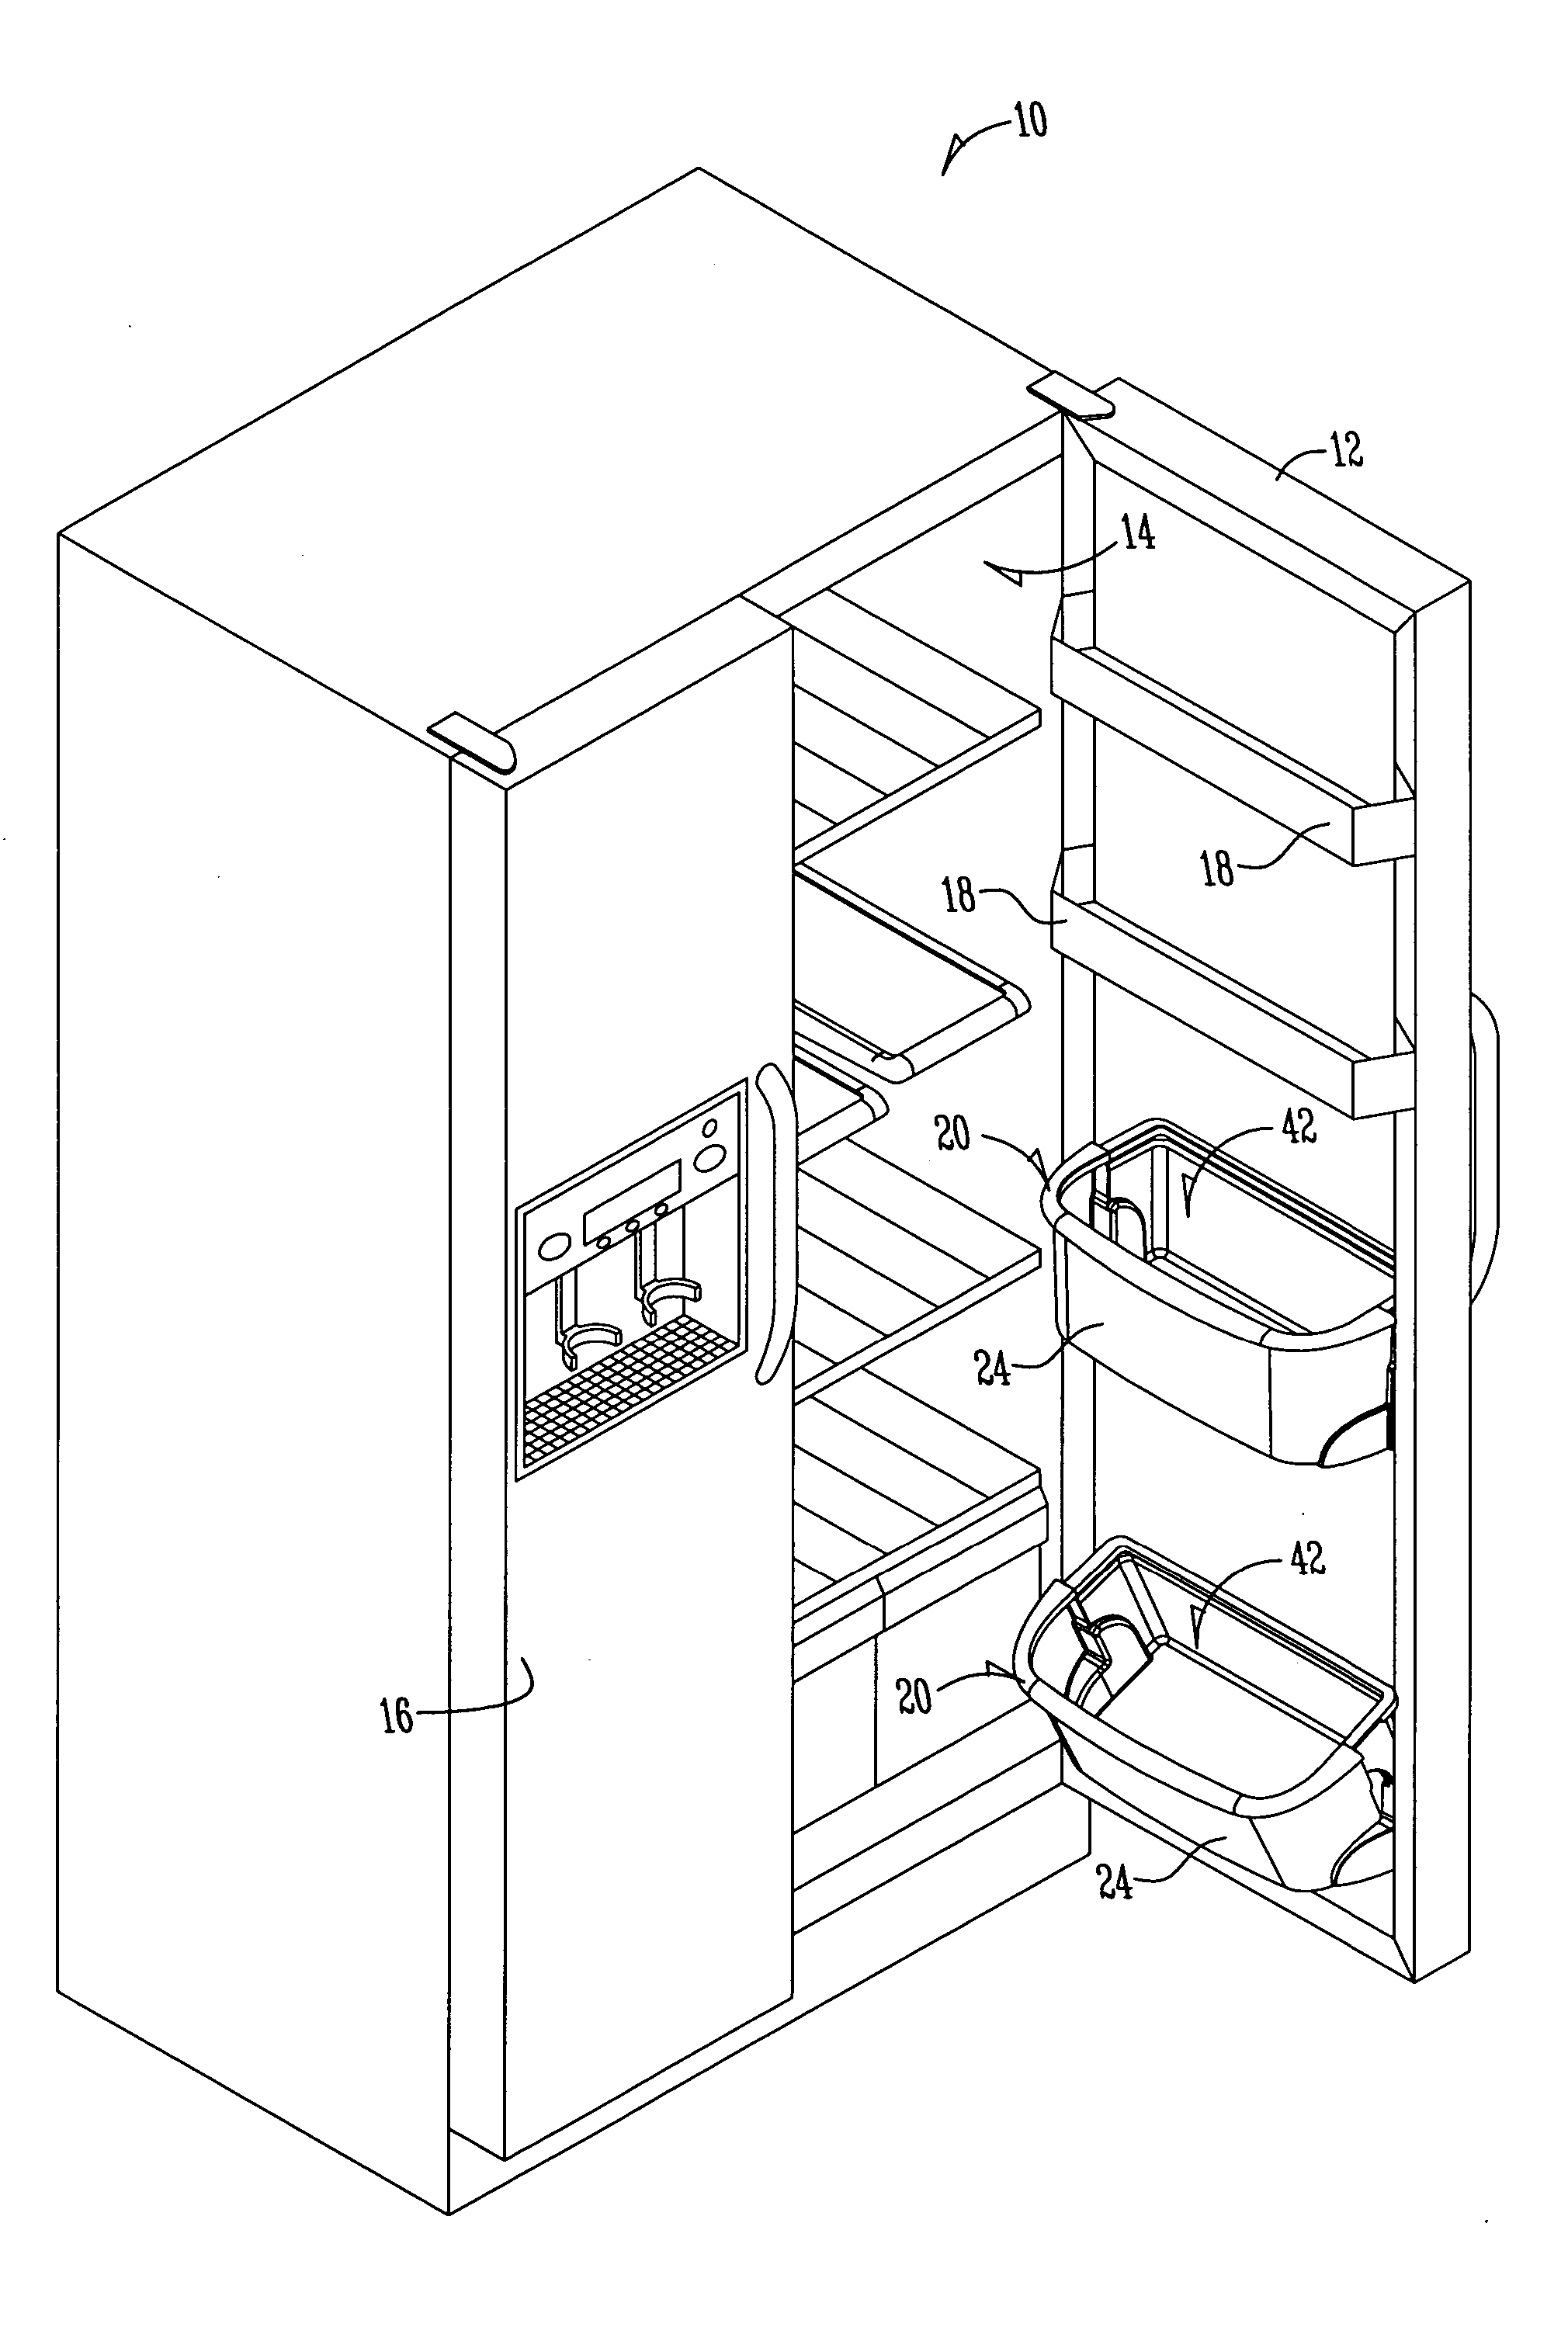 Tilt-out door buckets for refrigerators or freezers